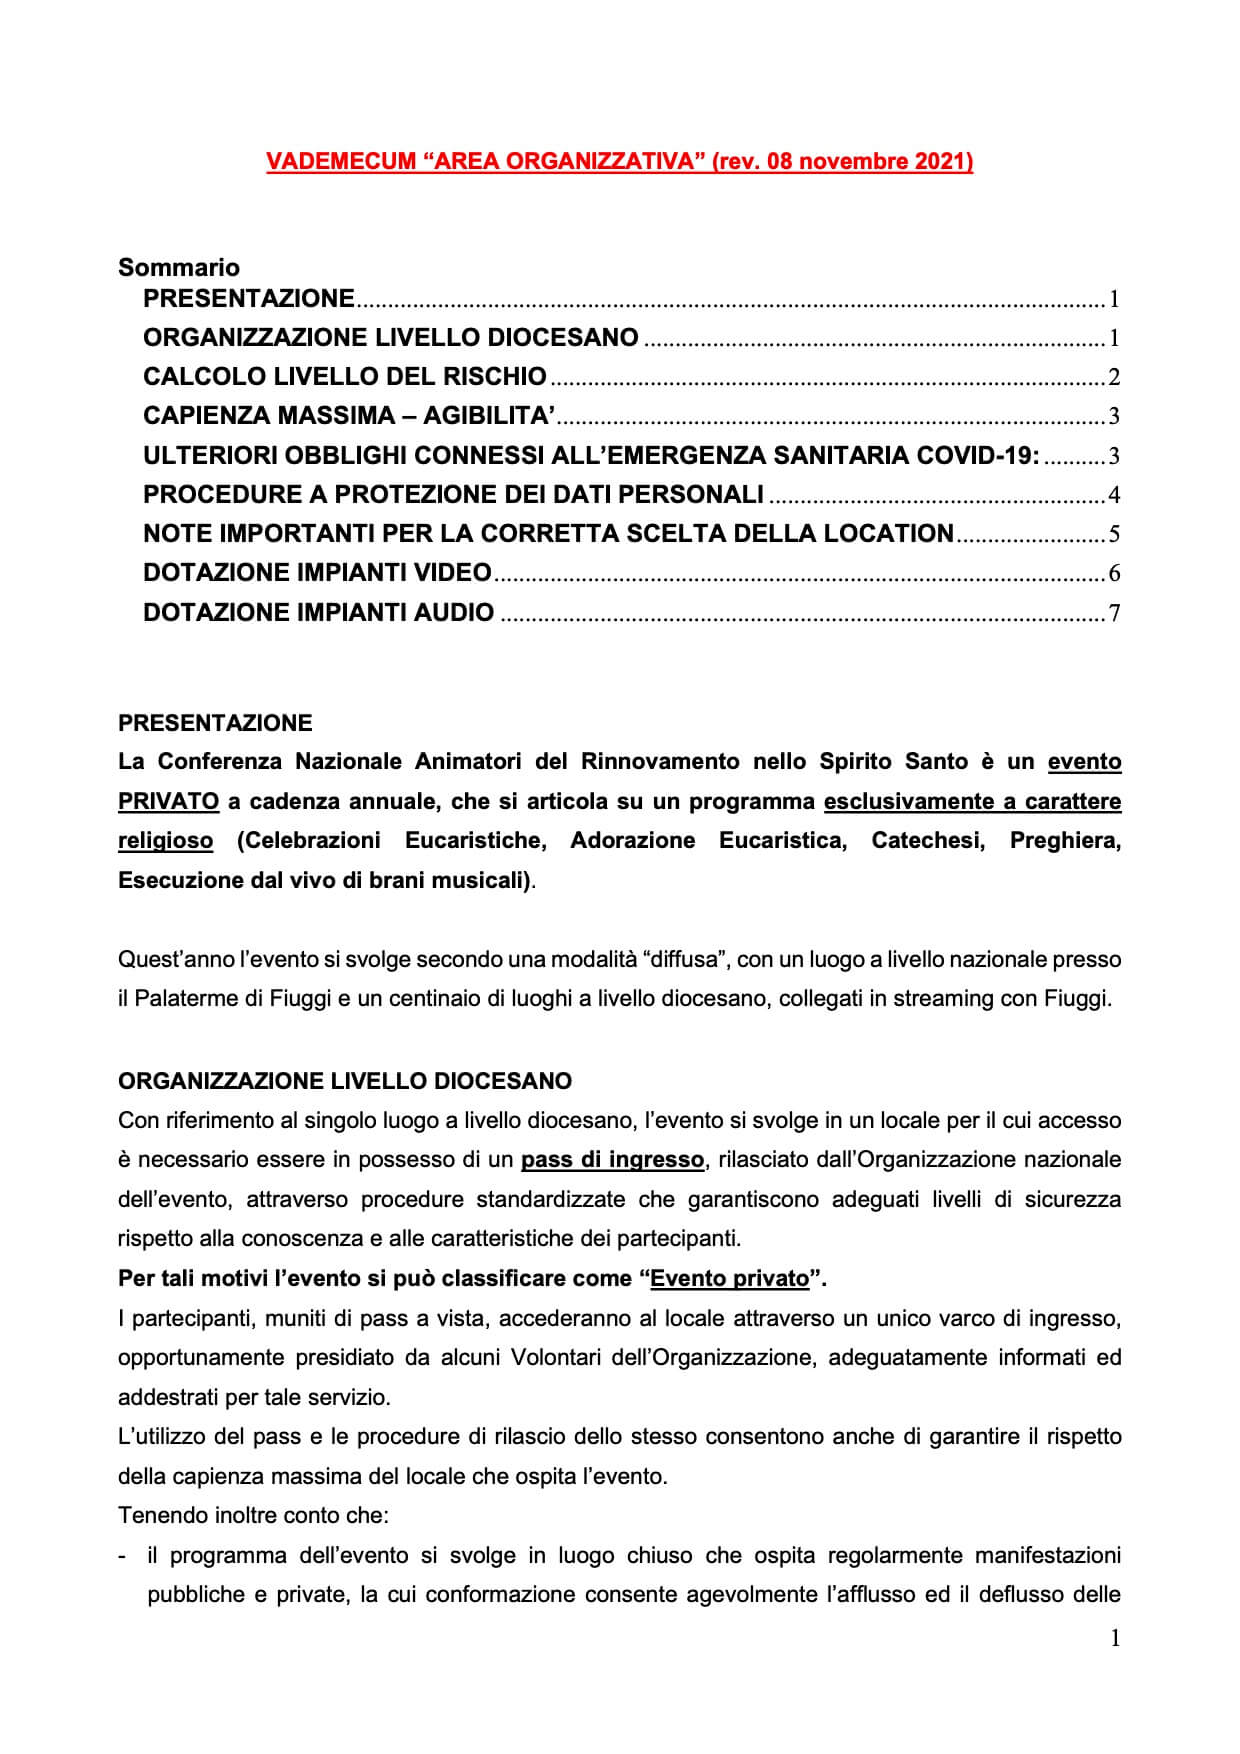 Vademecum Area Organizzazione Tecnica (agg. al 08.11.2021)